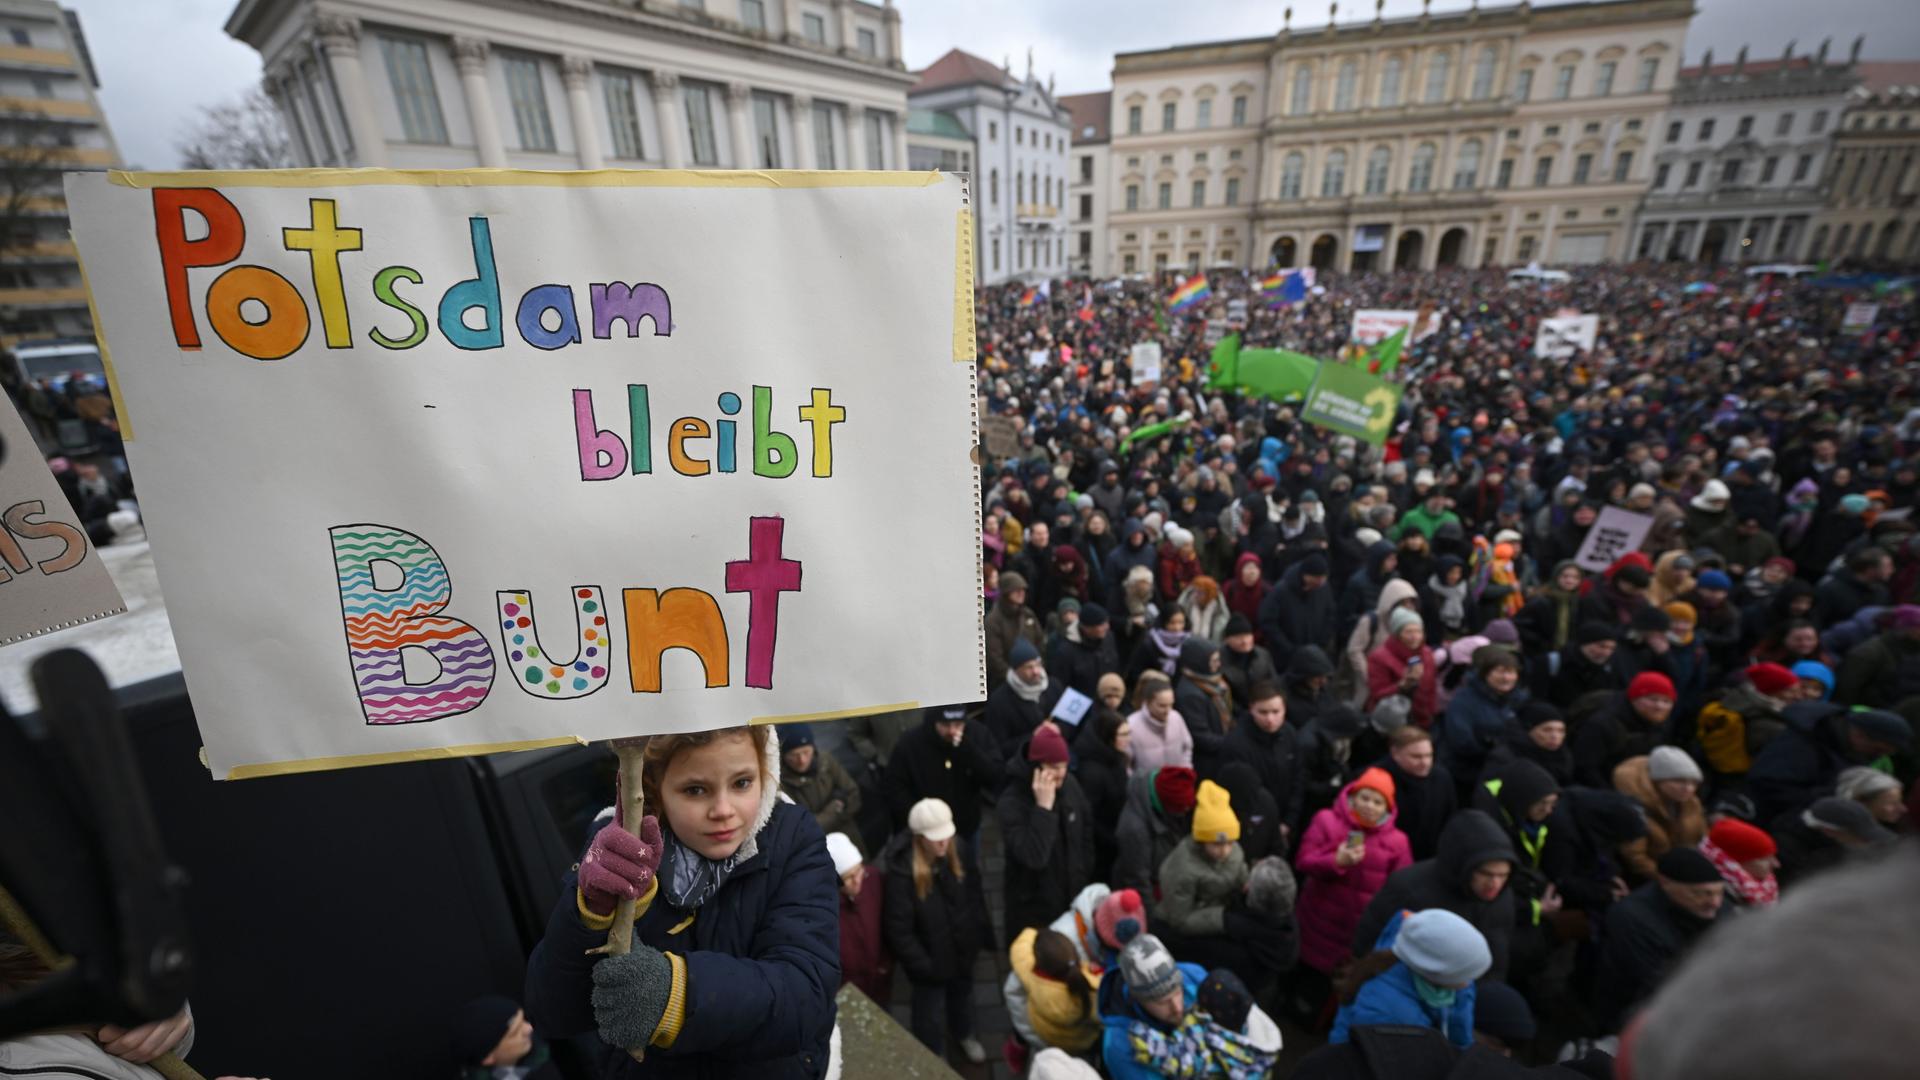 Eine Menschenmenge hat sich auf einem Platz versammelt. Ein Mädchen hält ein Schild in die Höhe. Darauf steht "Potsdam bleibt Bunt".